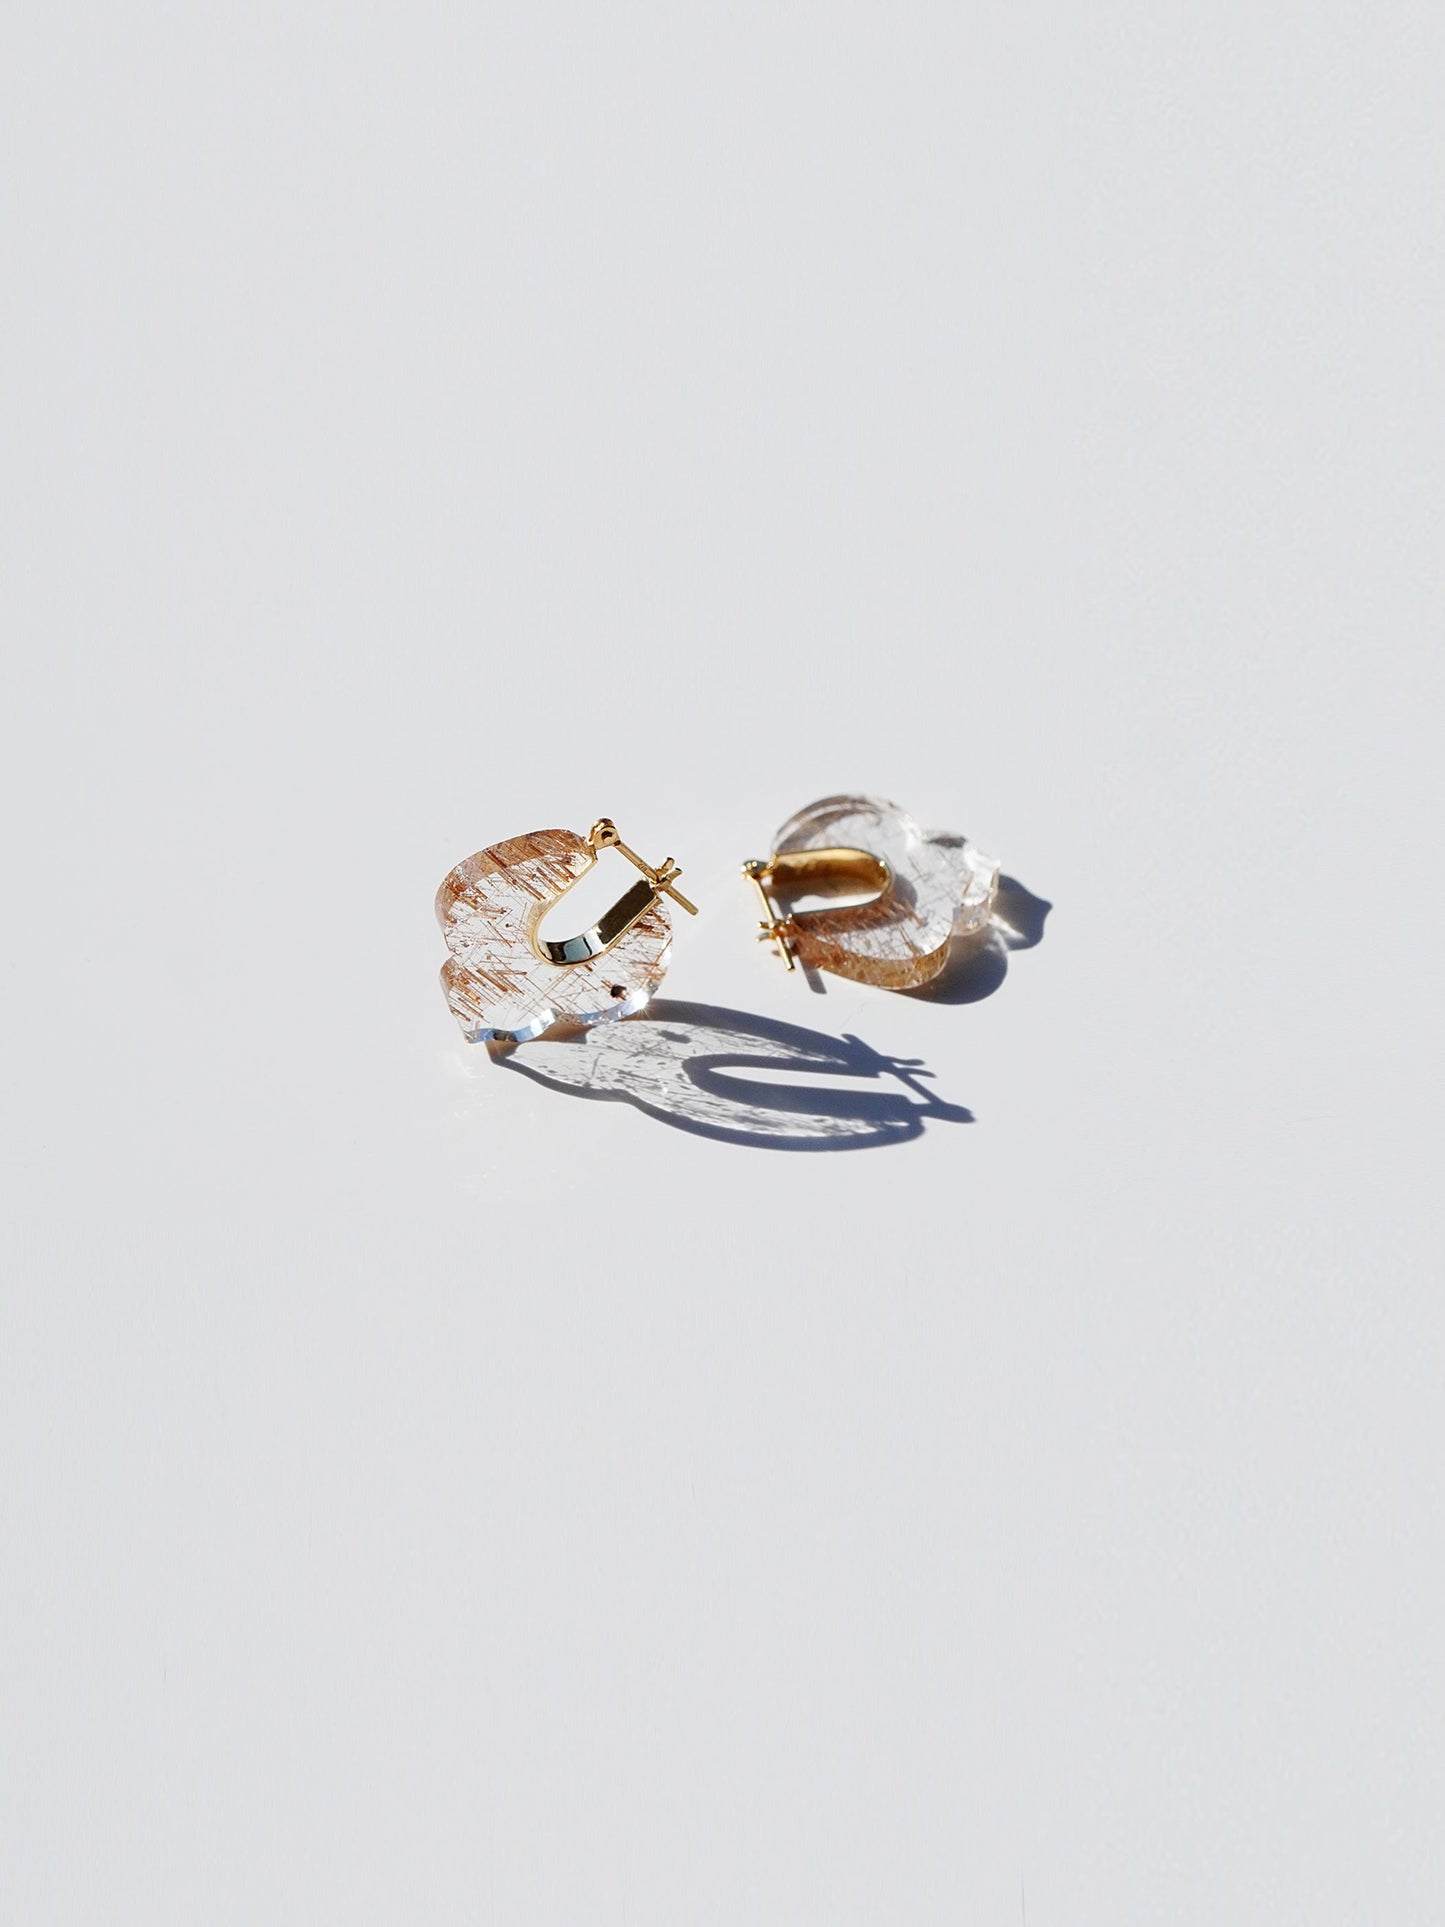 CREST_Pierced Earrings_Lily_Rutile Quartz